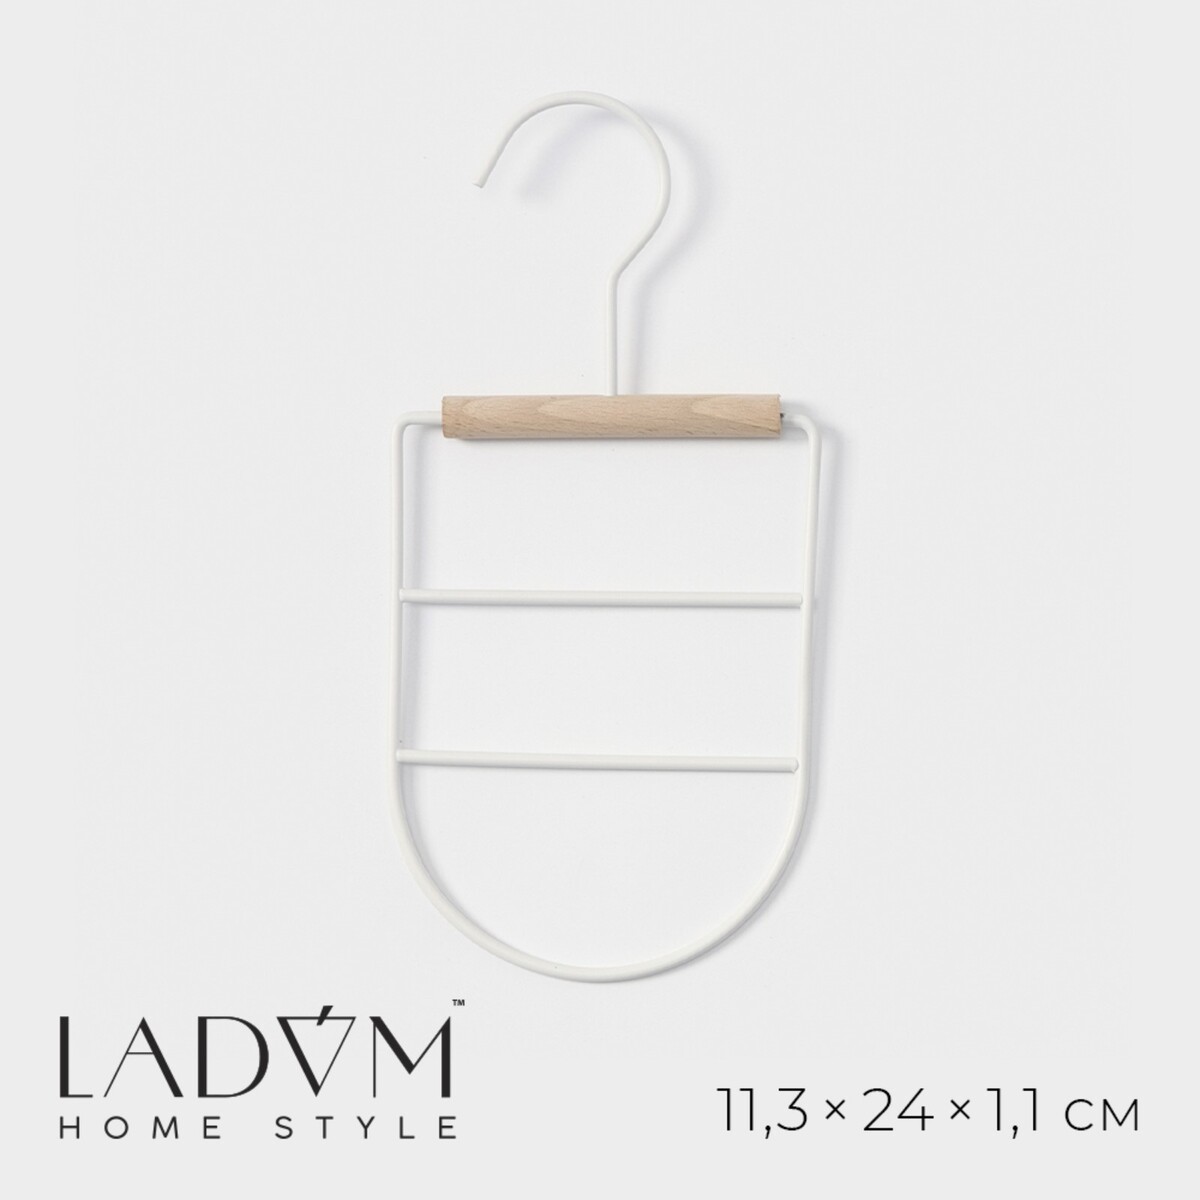 фото Вешалка органайзер для ремней и шарфов многоуровневая ladо́m laconique, 11,3×24×1,1 см, цвет белый